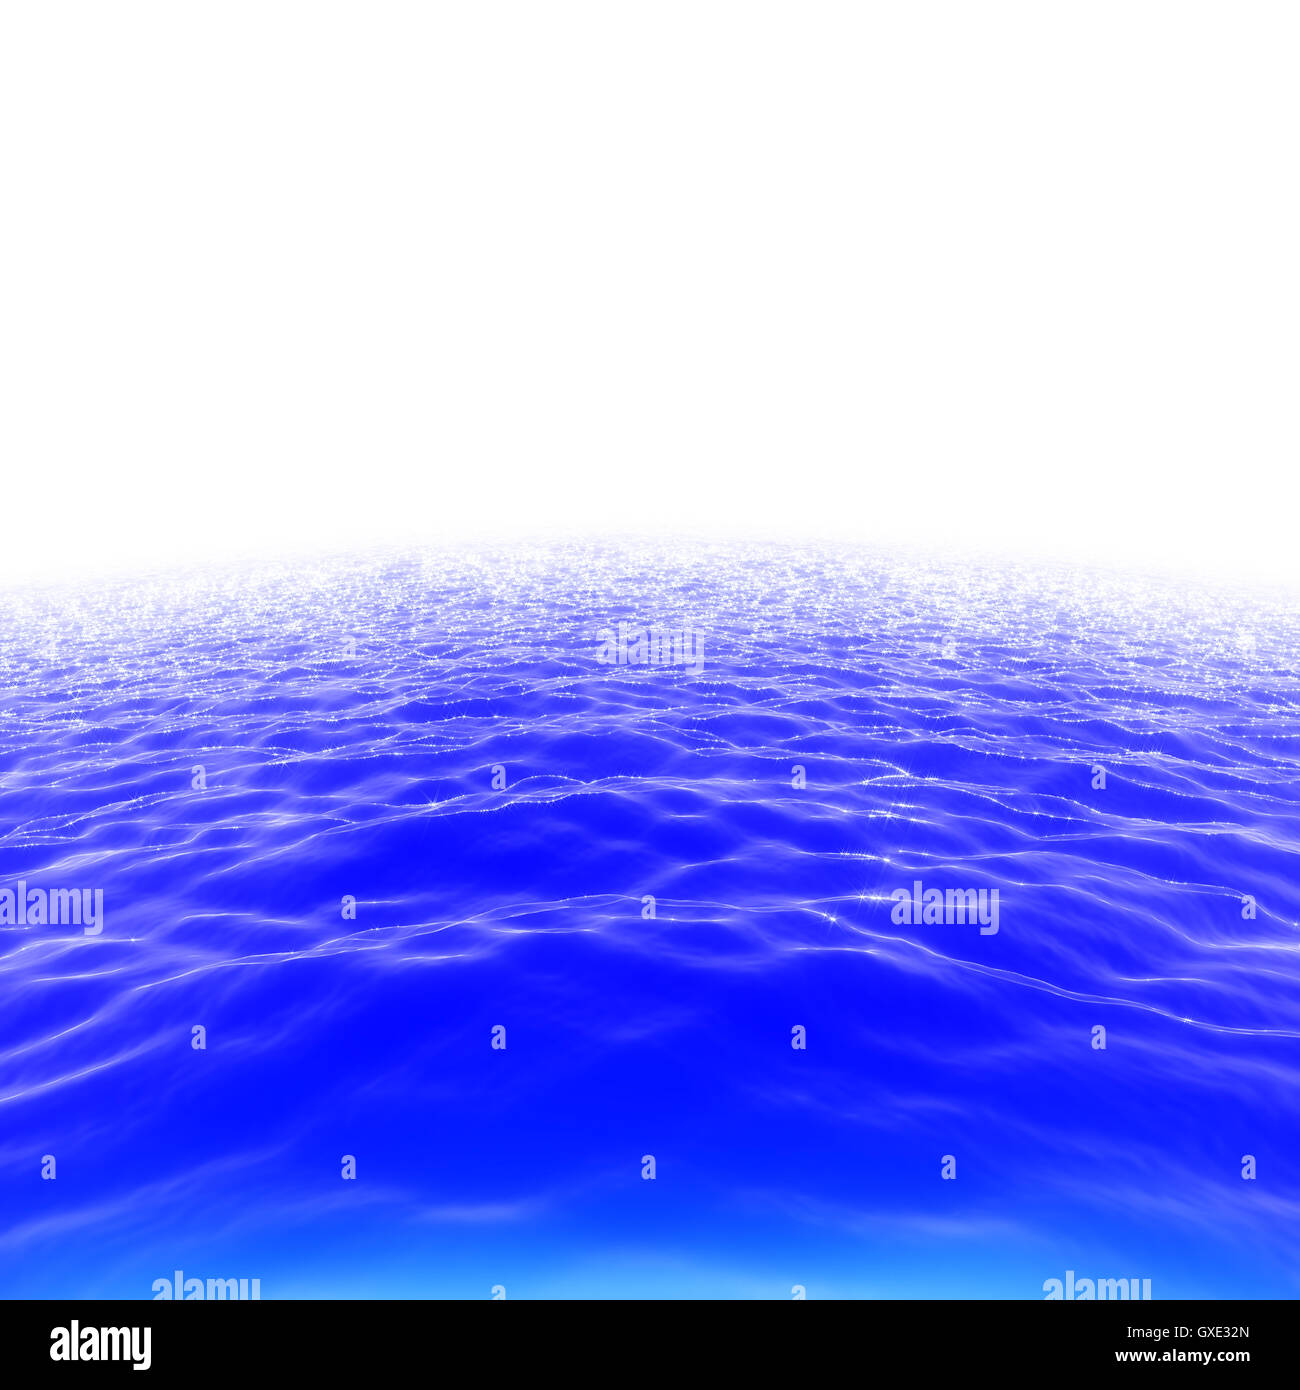 Abstrakte wellige blaue Meer (Meer) Oberfläche Backgroung Abbildung: Wasseroberfläche mit glitzernden funkelnden Wellen isoliert auf weiss Stockfoto